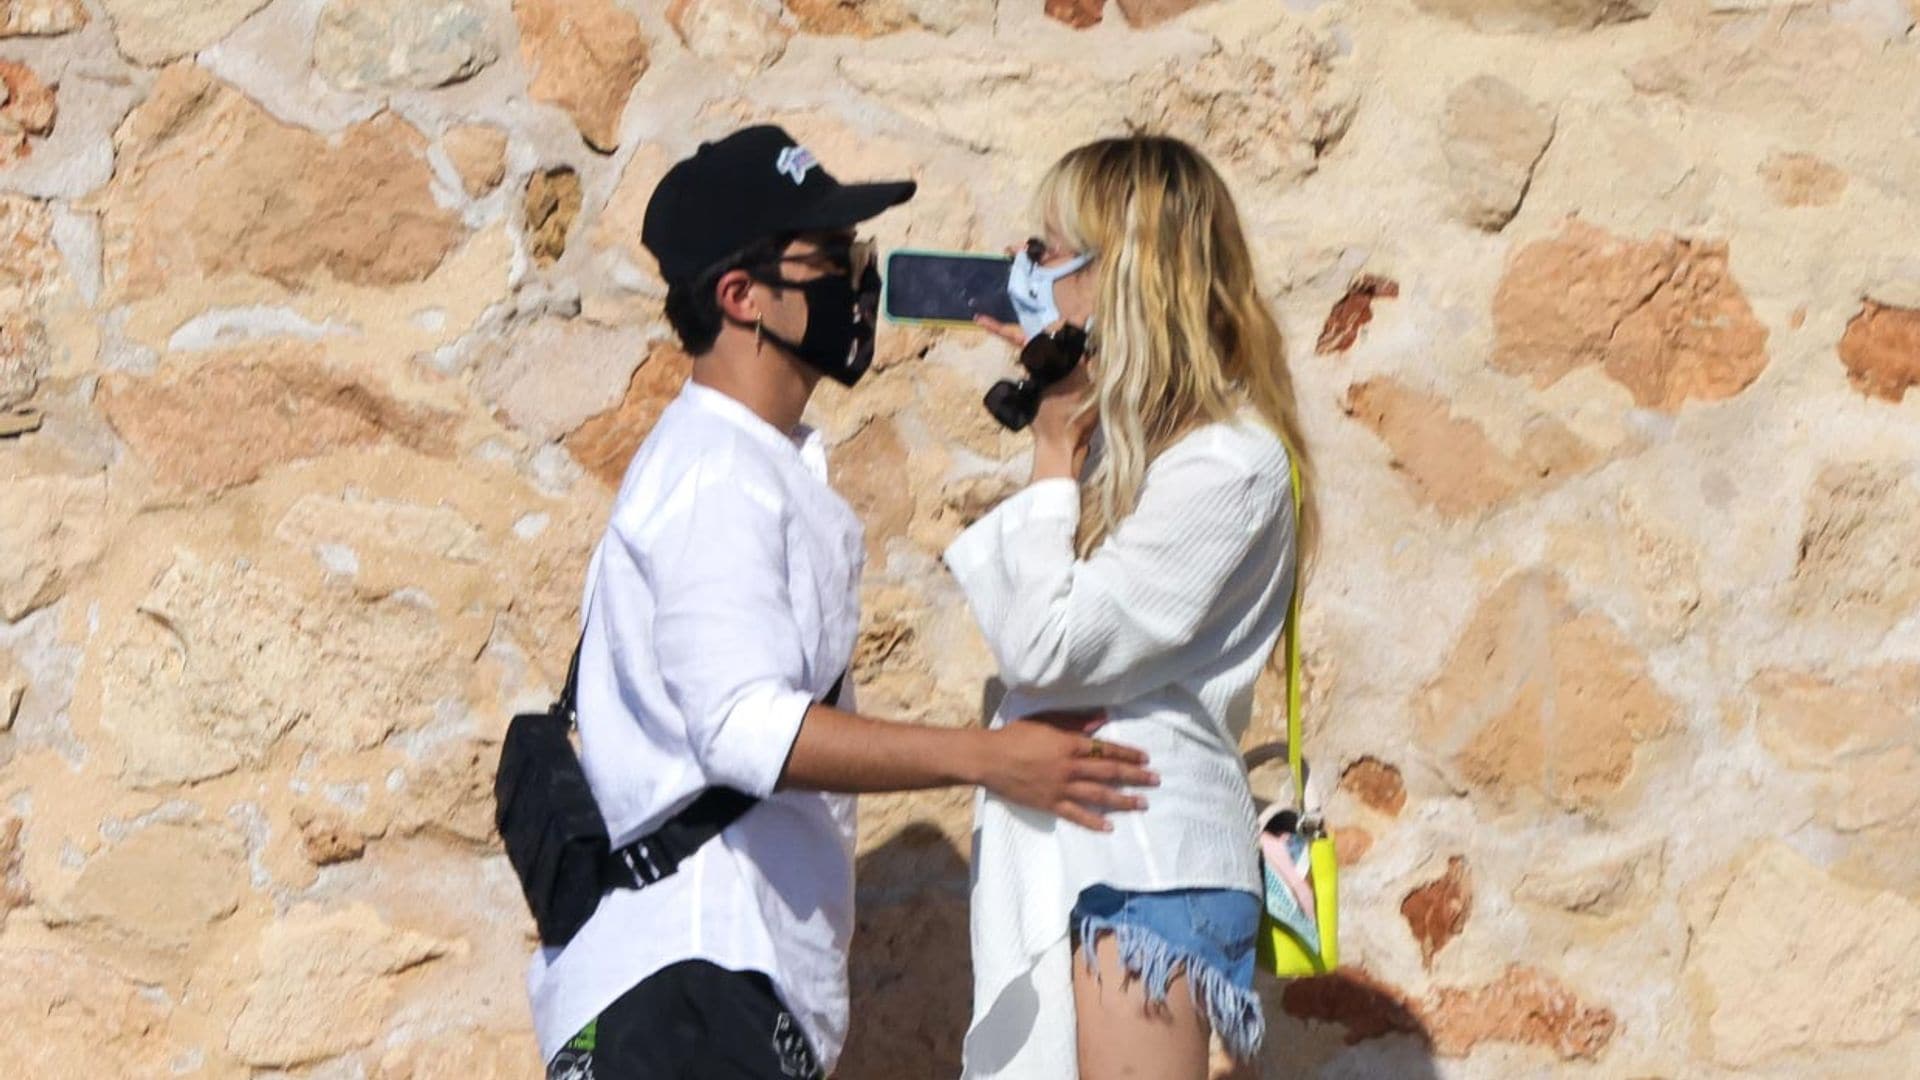 Danna Paola responde a sus románticas imágenes con el cantante Álex Hoyer en Ibiza